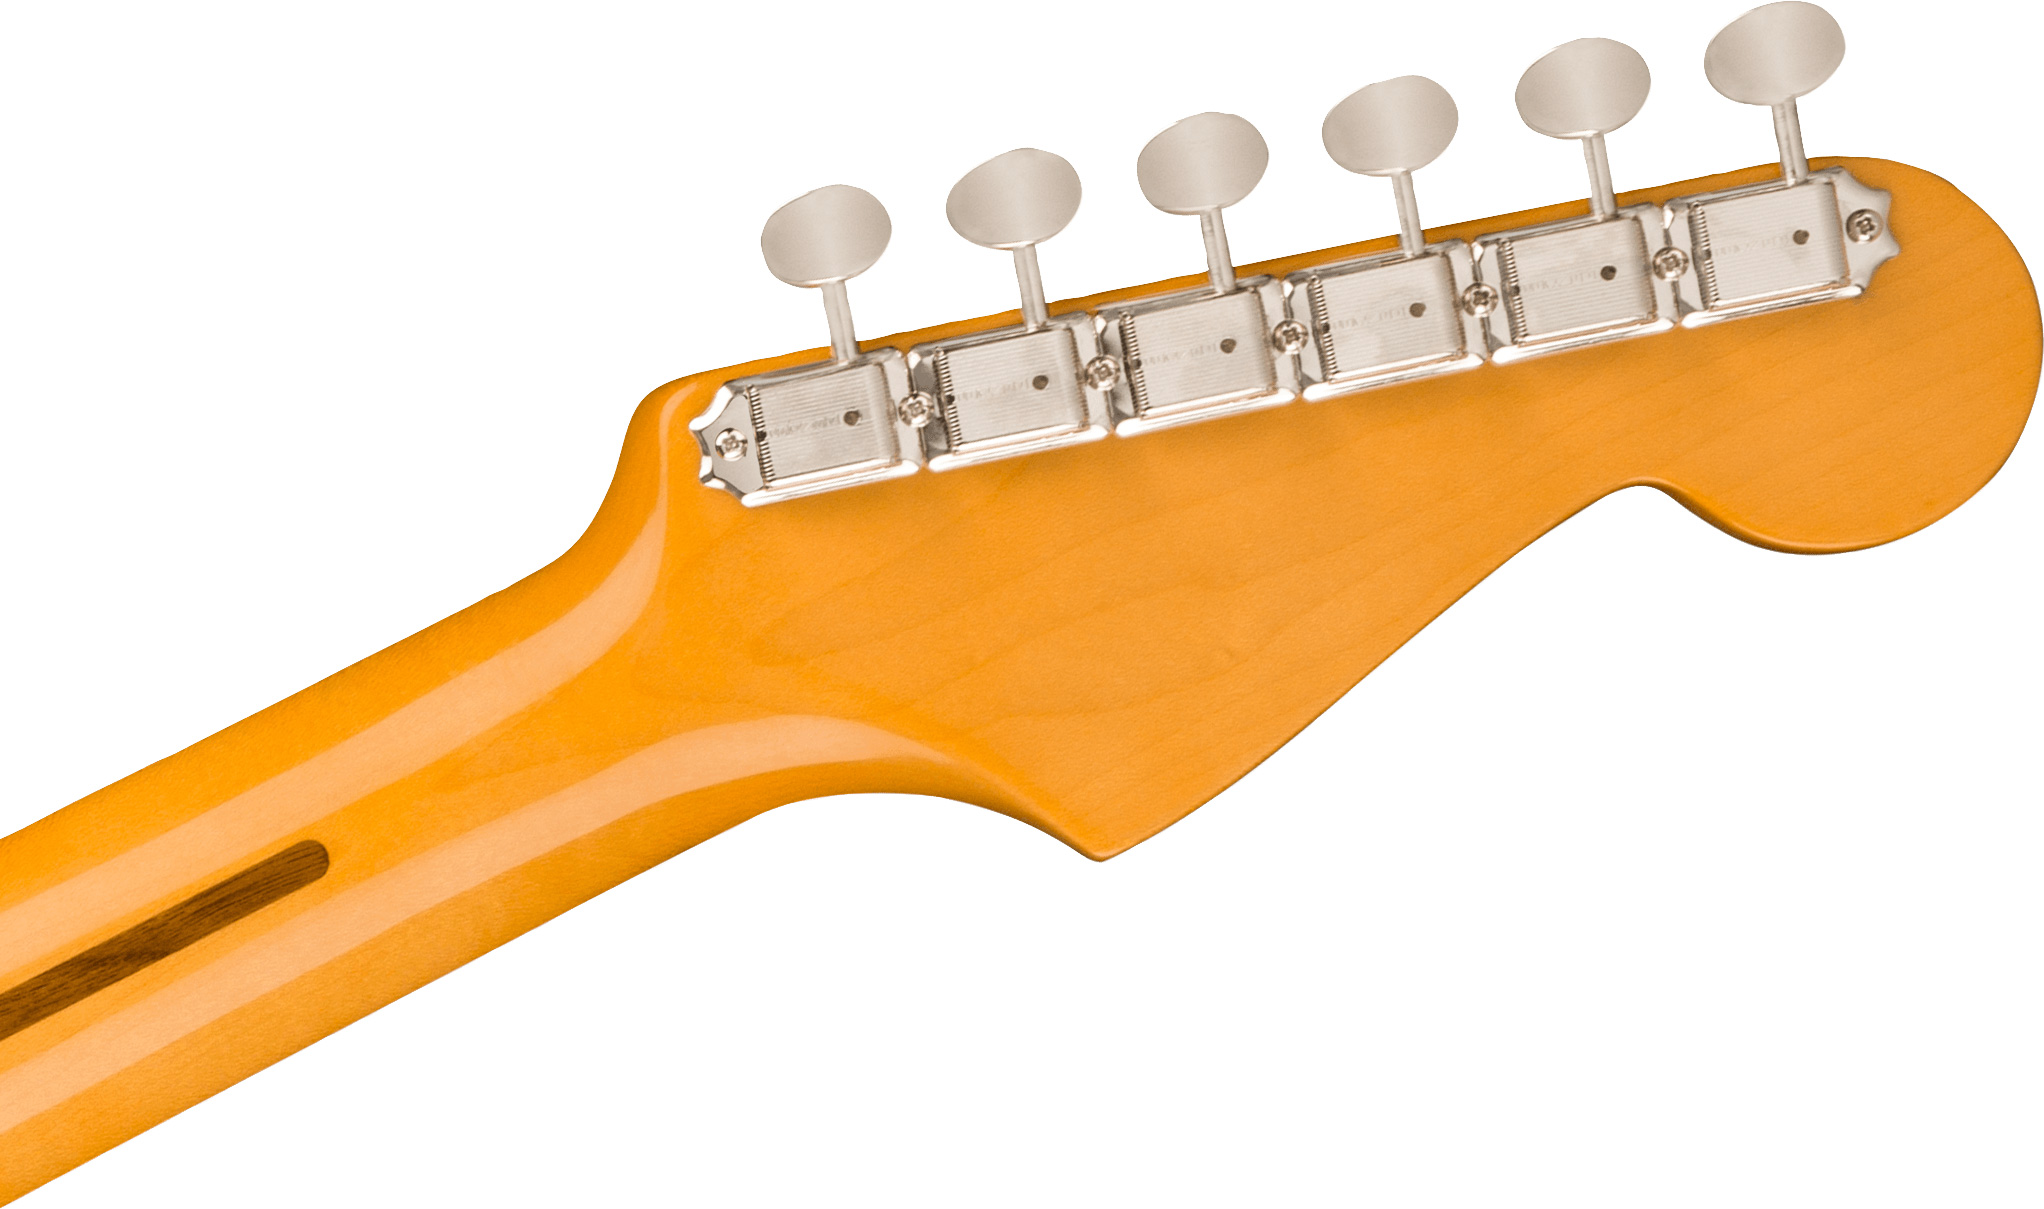 Fender Strat 1957 American Vintage Ii Lh Gaucher Usa 3s Trem Mn - Vintage Blonde - E-Gitarre für Linkshänder - Variation 3